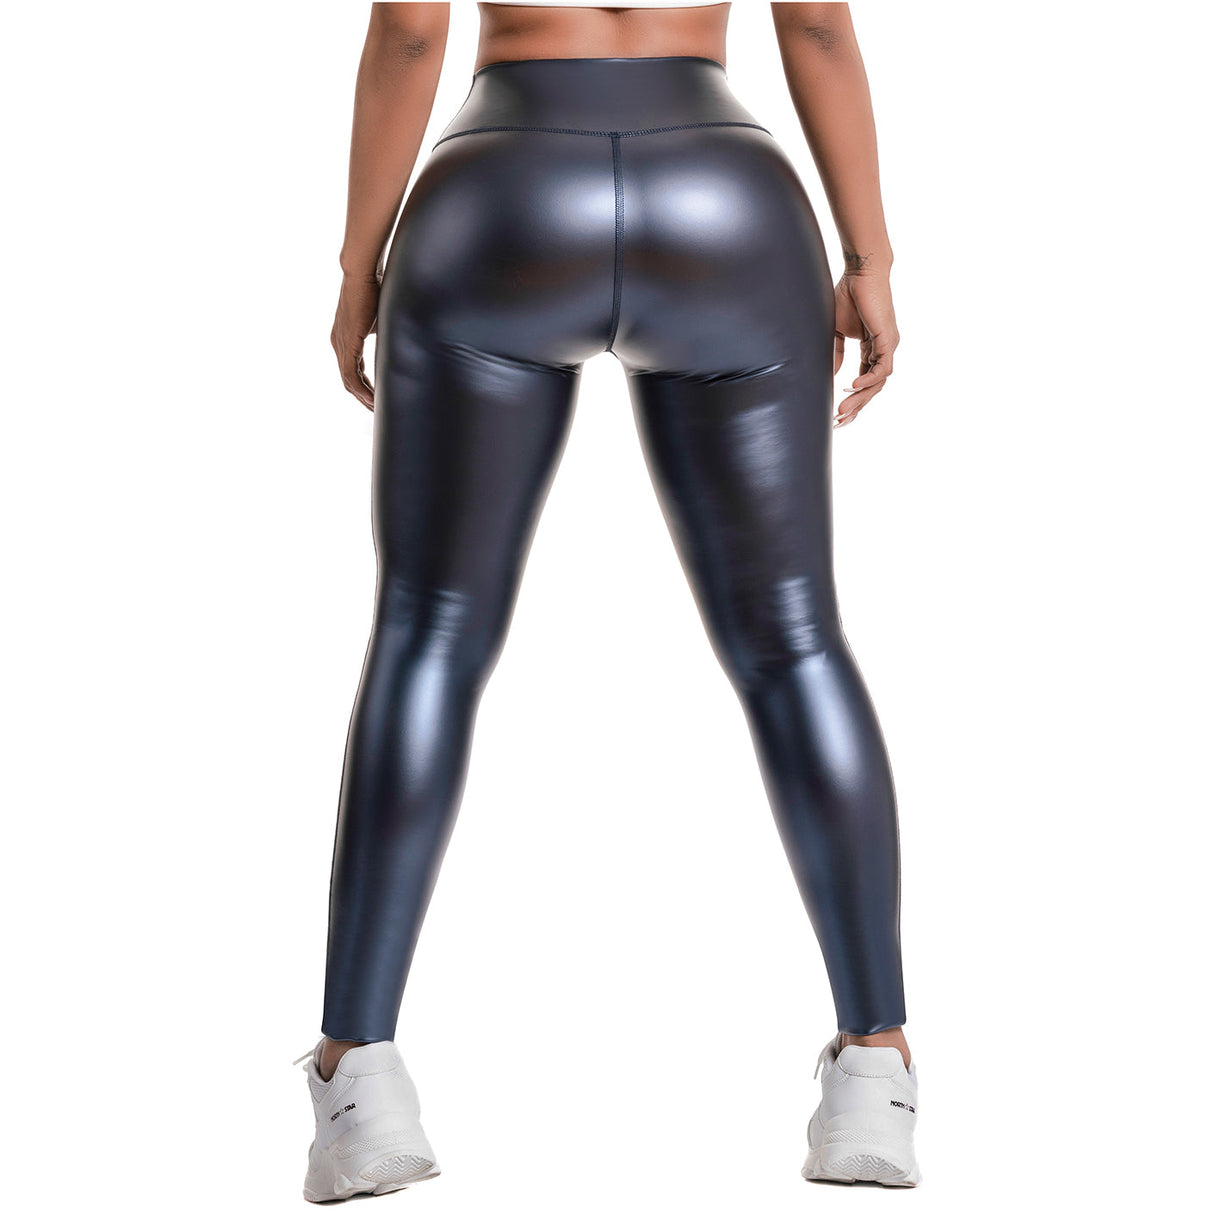 Flexmee High-Waisted Shimmer Print Black Gym Leggings –